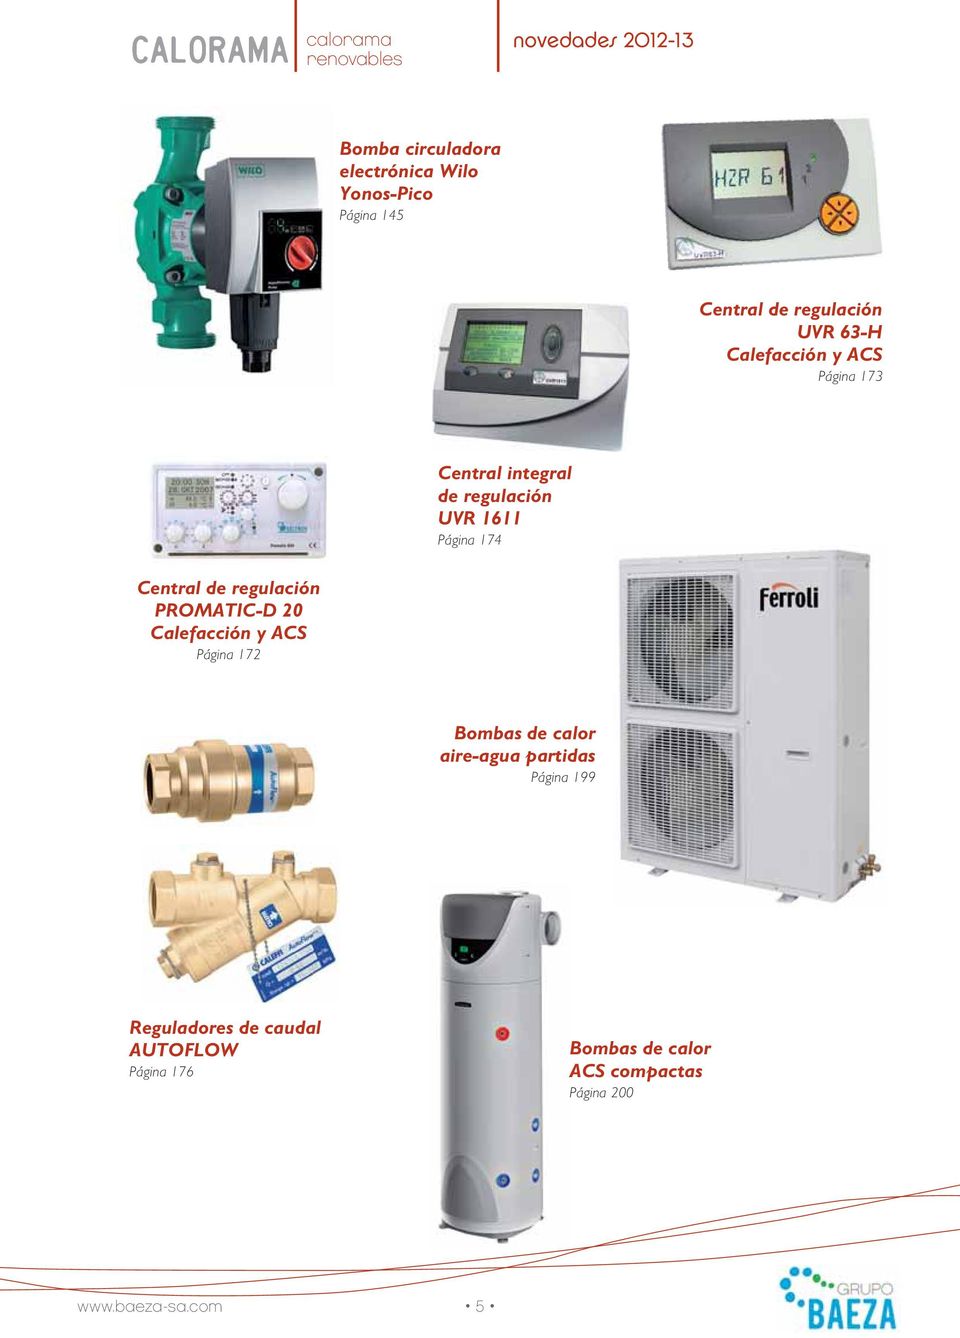 regulación PROMATIC-D 20 Calefacción y ACS Página 172 Bombas de calor aire-agua partidas Página 199